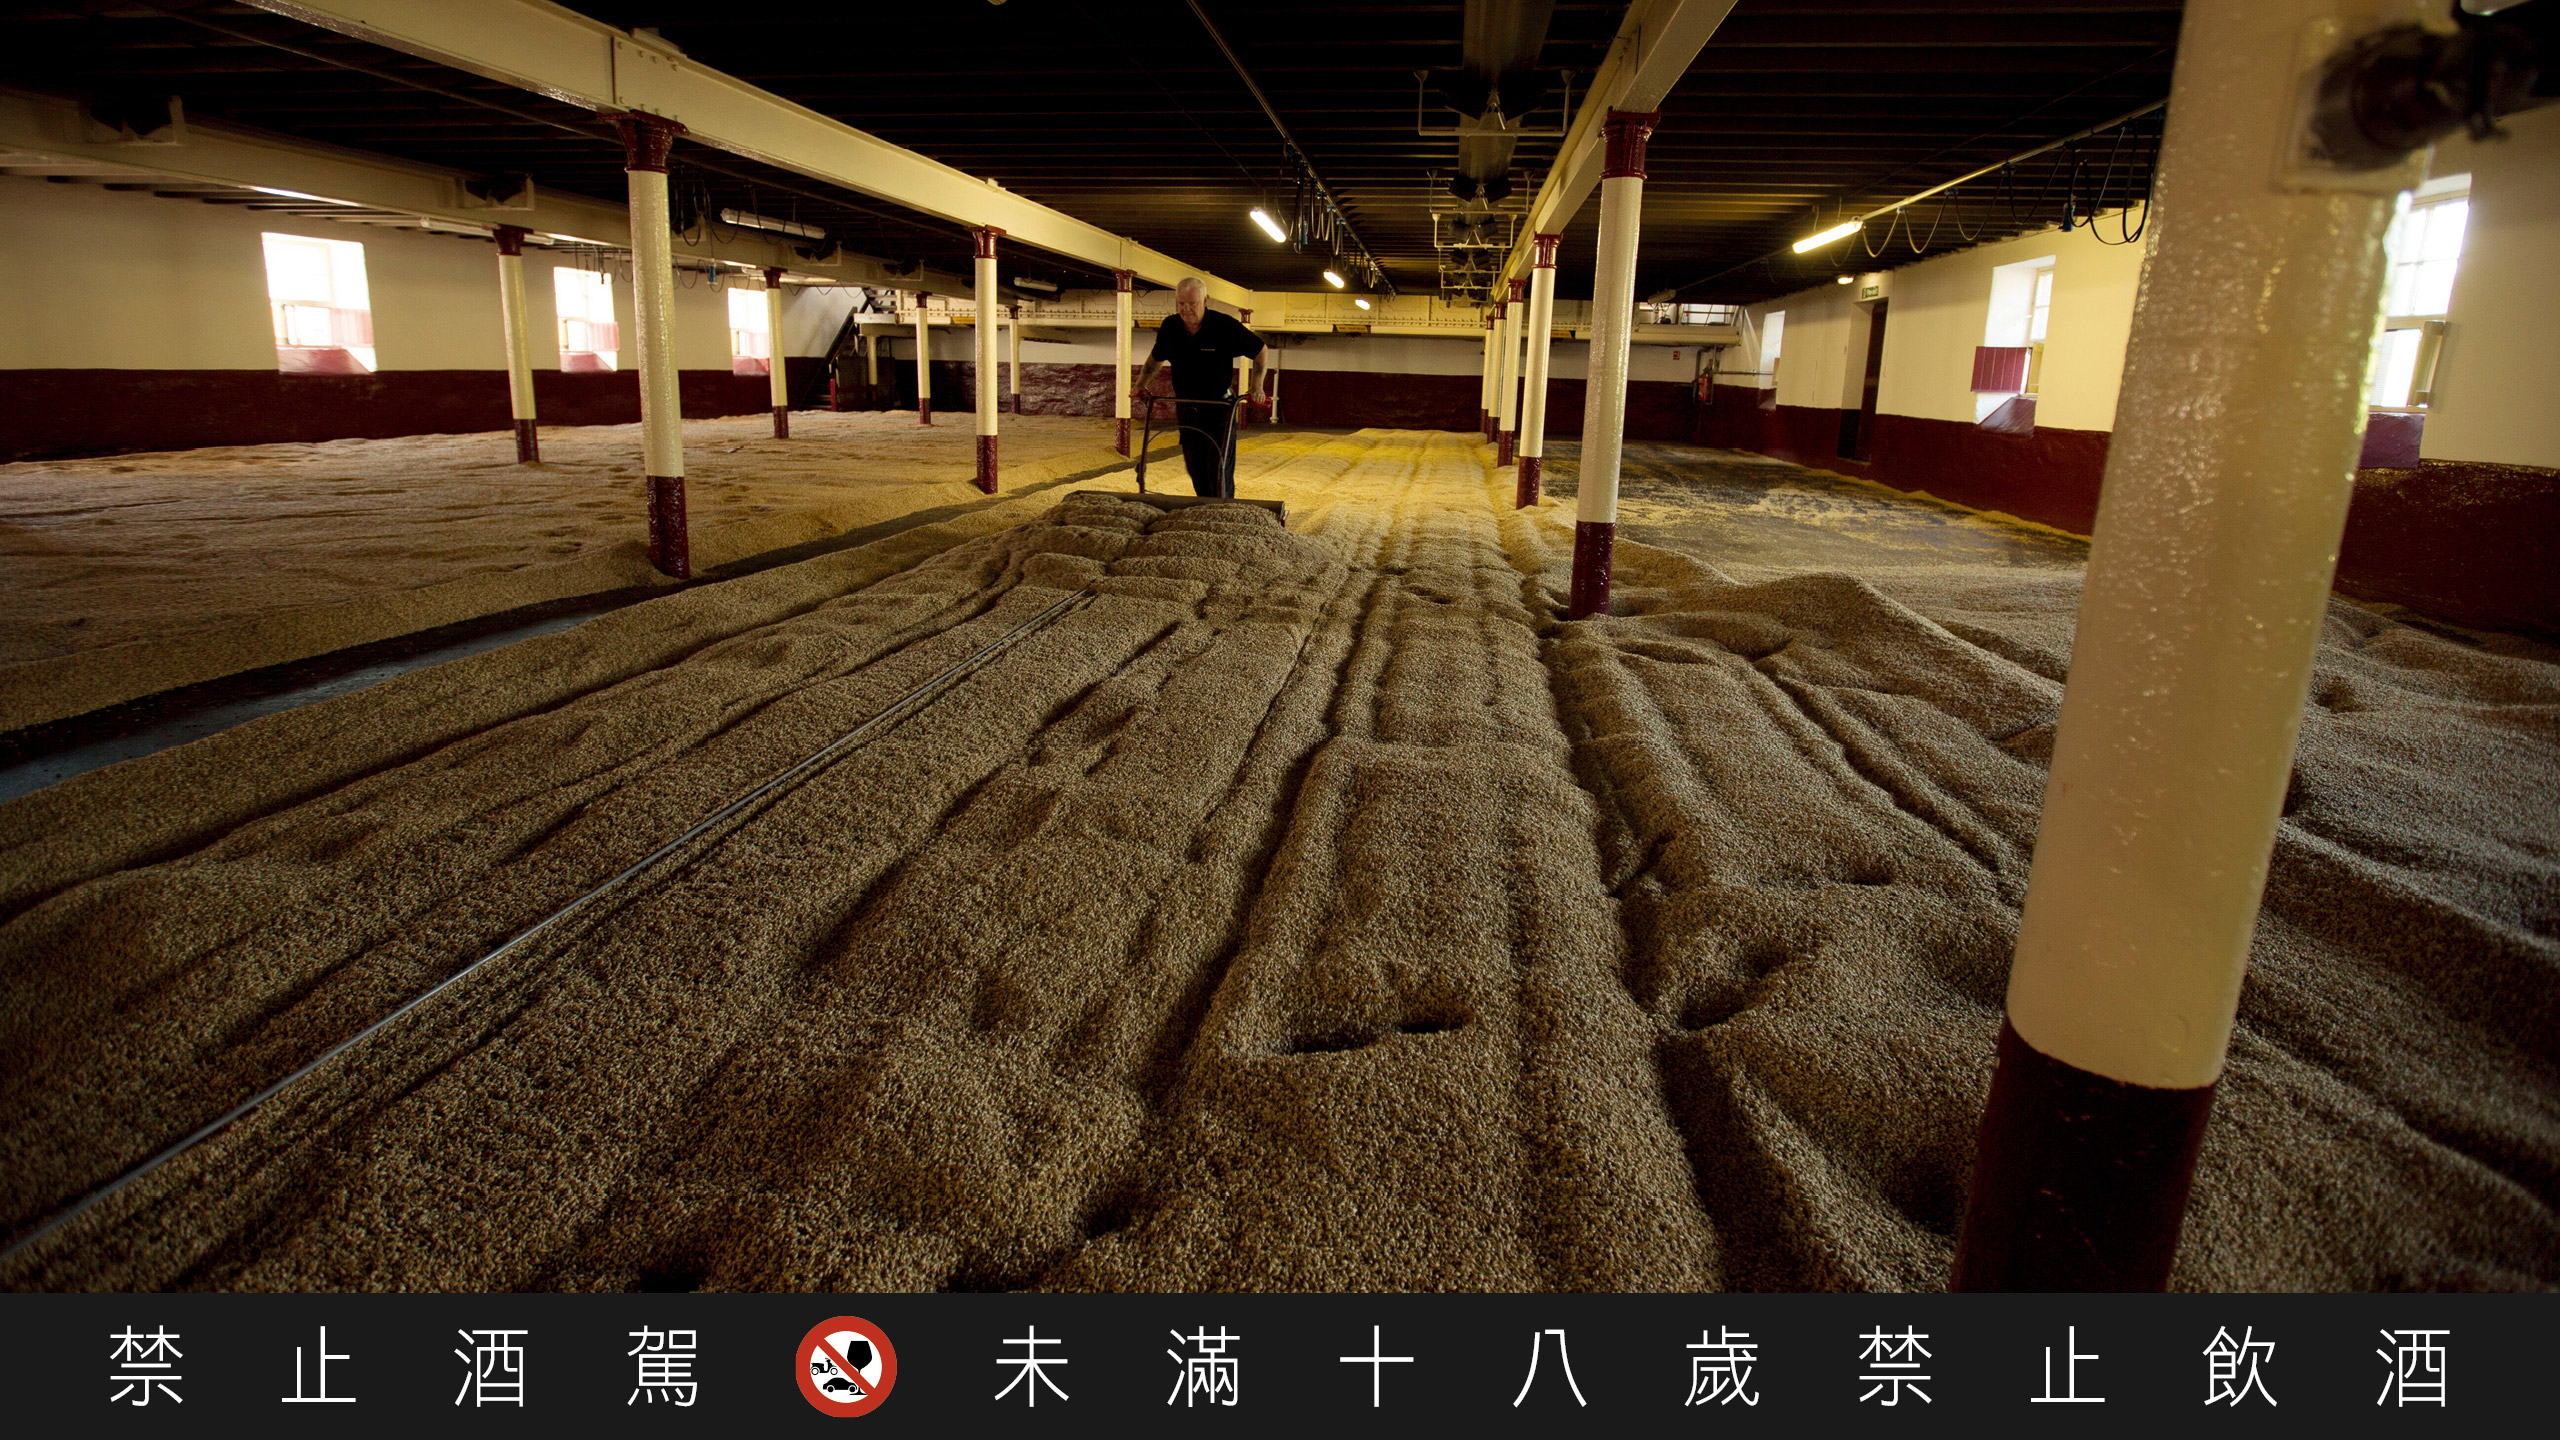 百富是苏格兰少数仍使用传统地板翻麦方式的酒厂之一。麦师傅每天翻搅大麦四次，直到大麦发芽到能够送入熏窑的程度为止。